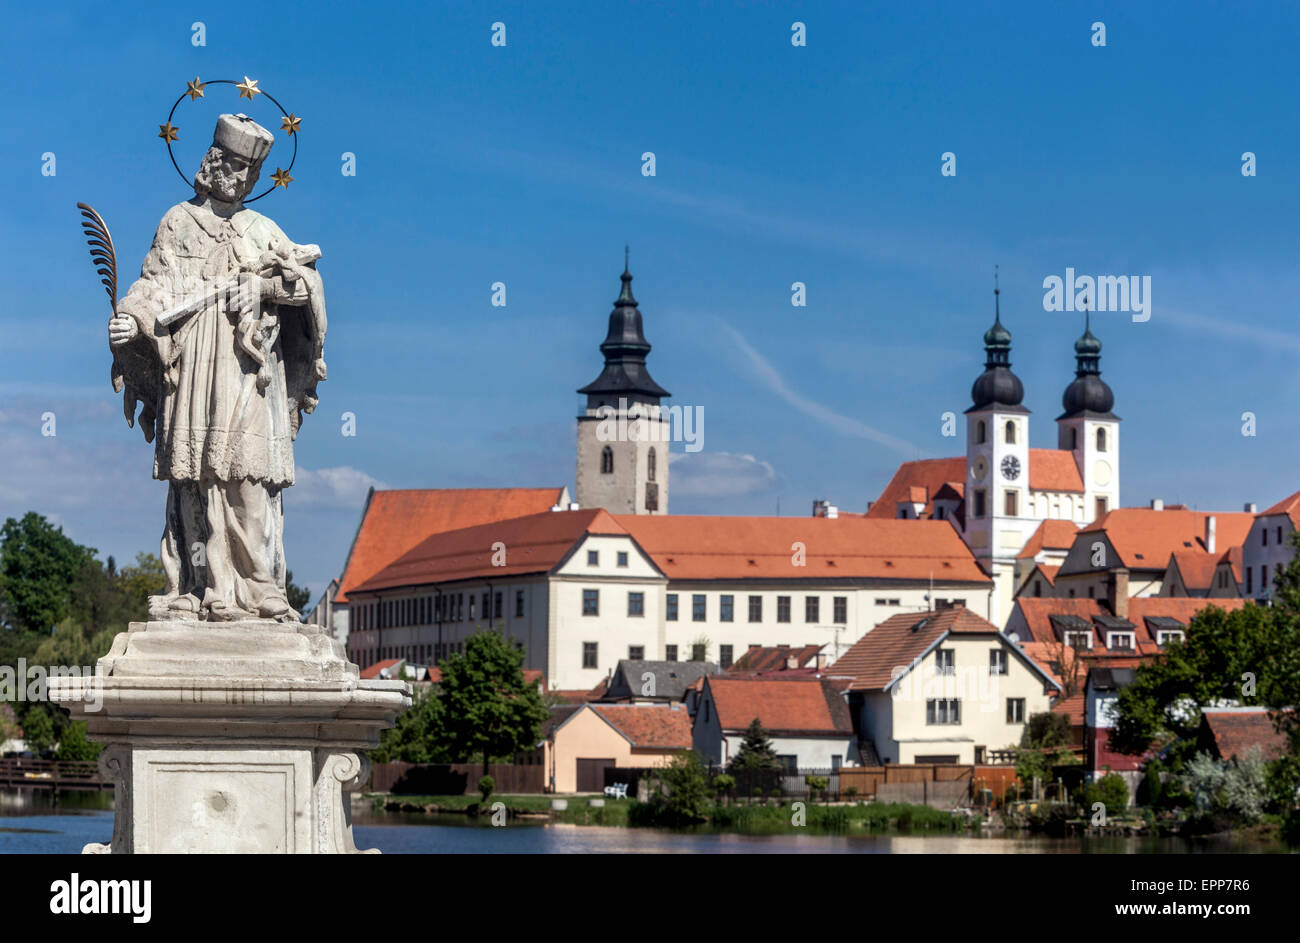 Telc Tschechische Republik, Weltkulturerbe Stadt, Statue des Hl. Johannes von Nepomuk Stockfoto